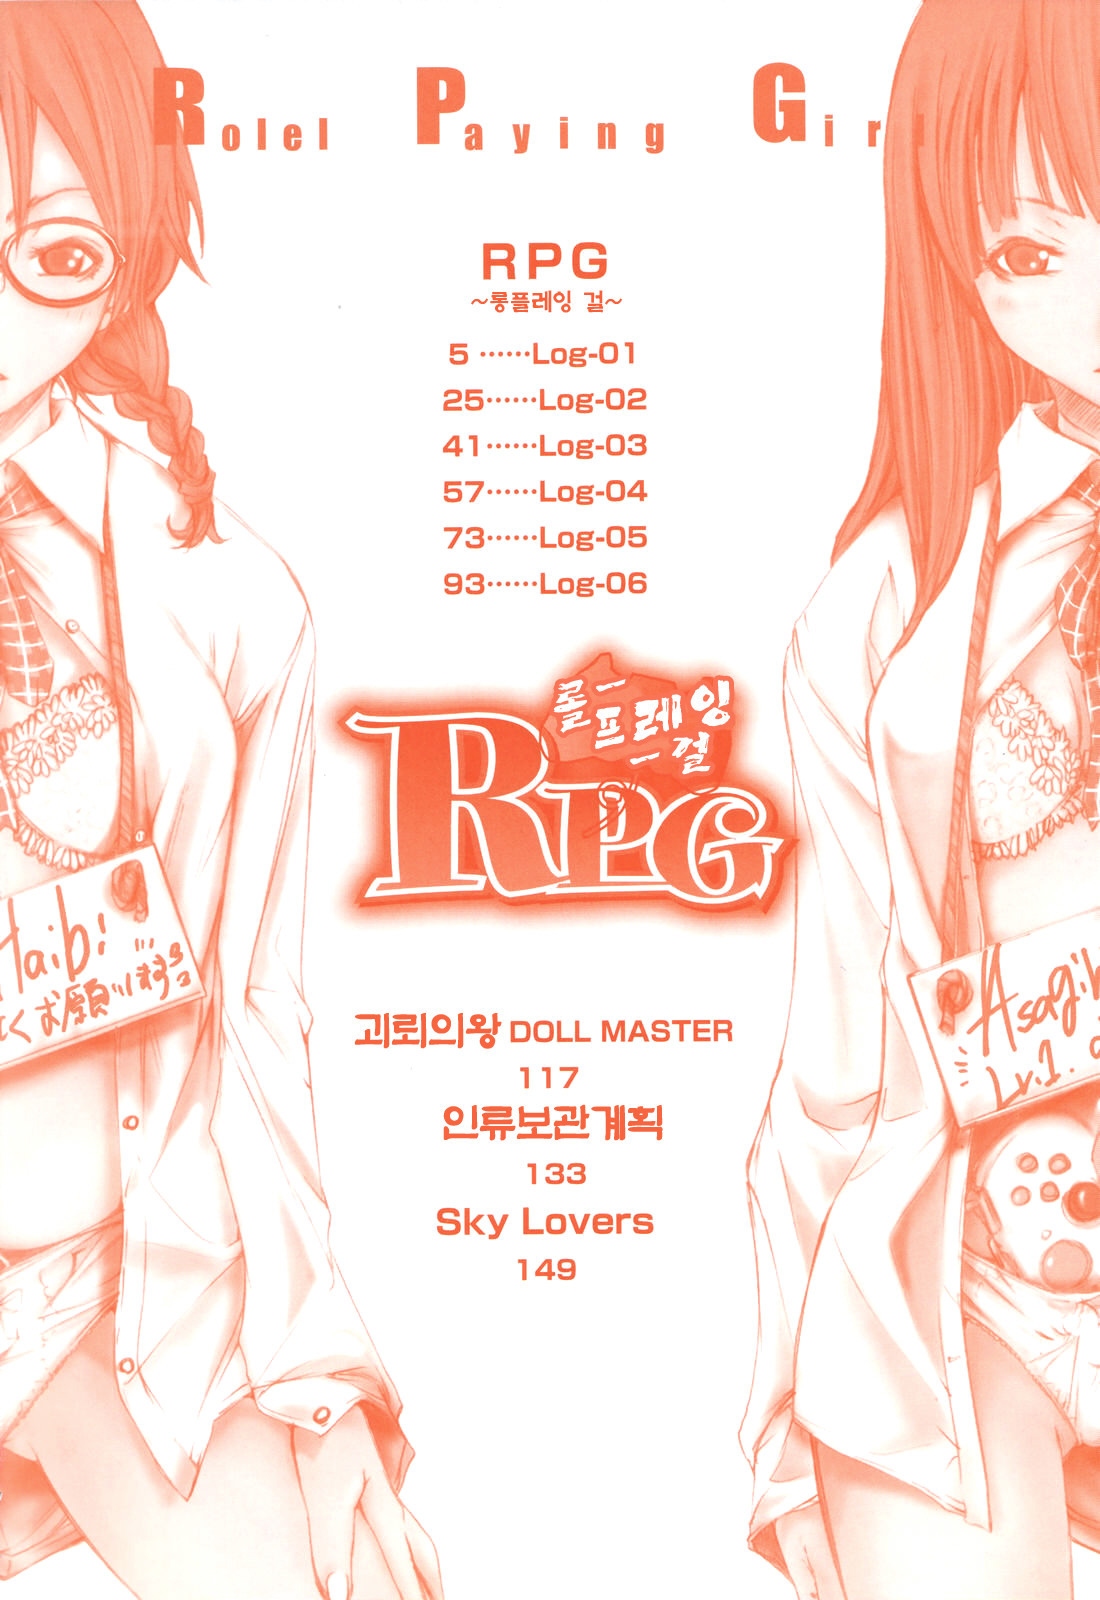 [Kentarou] RPG Role Playing Girl [korean] page 4 full